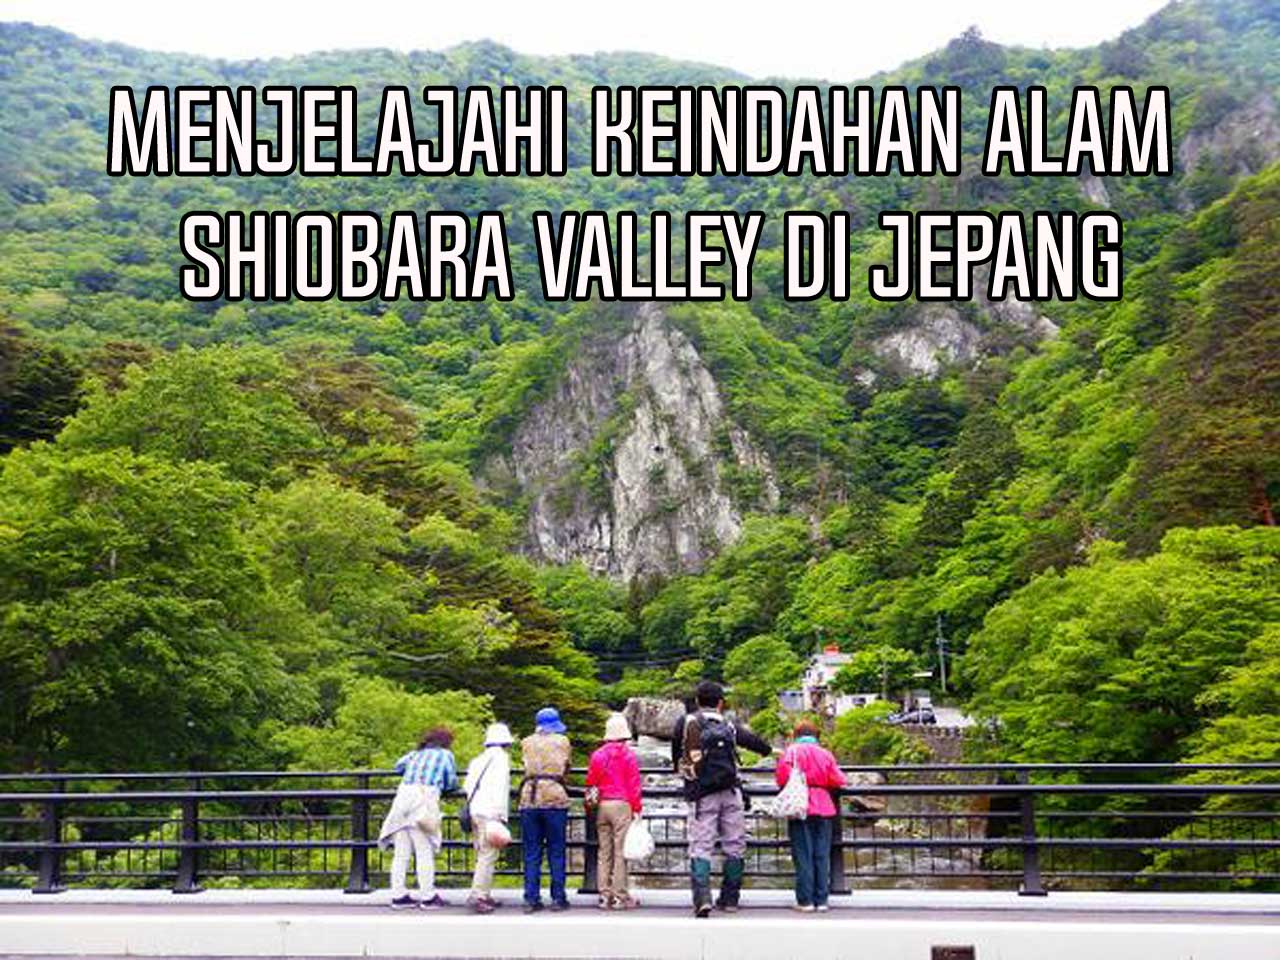 Shiobara Valley